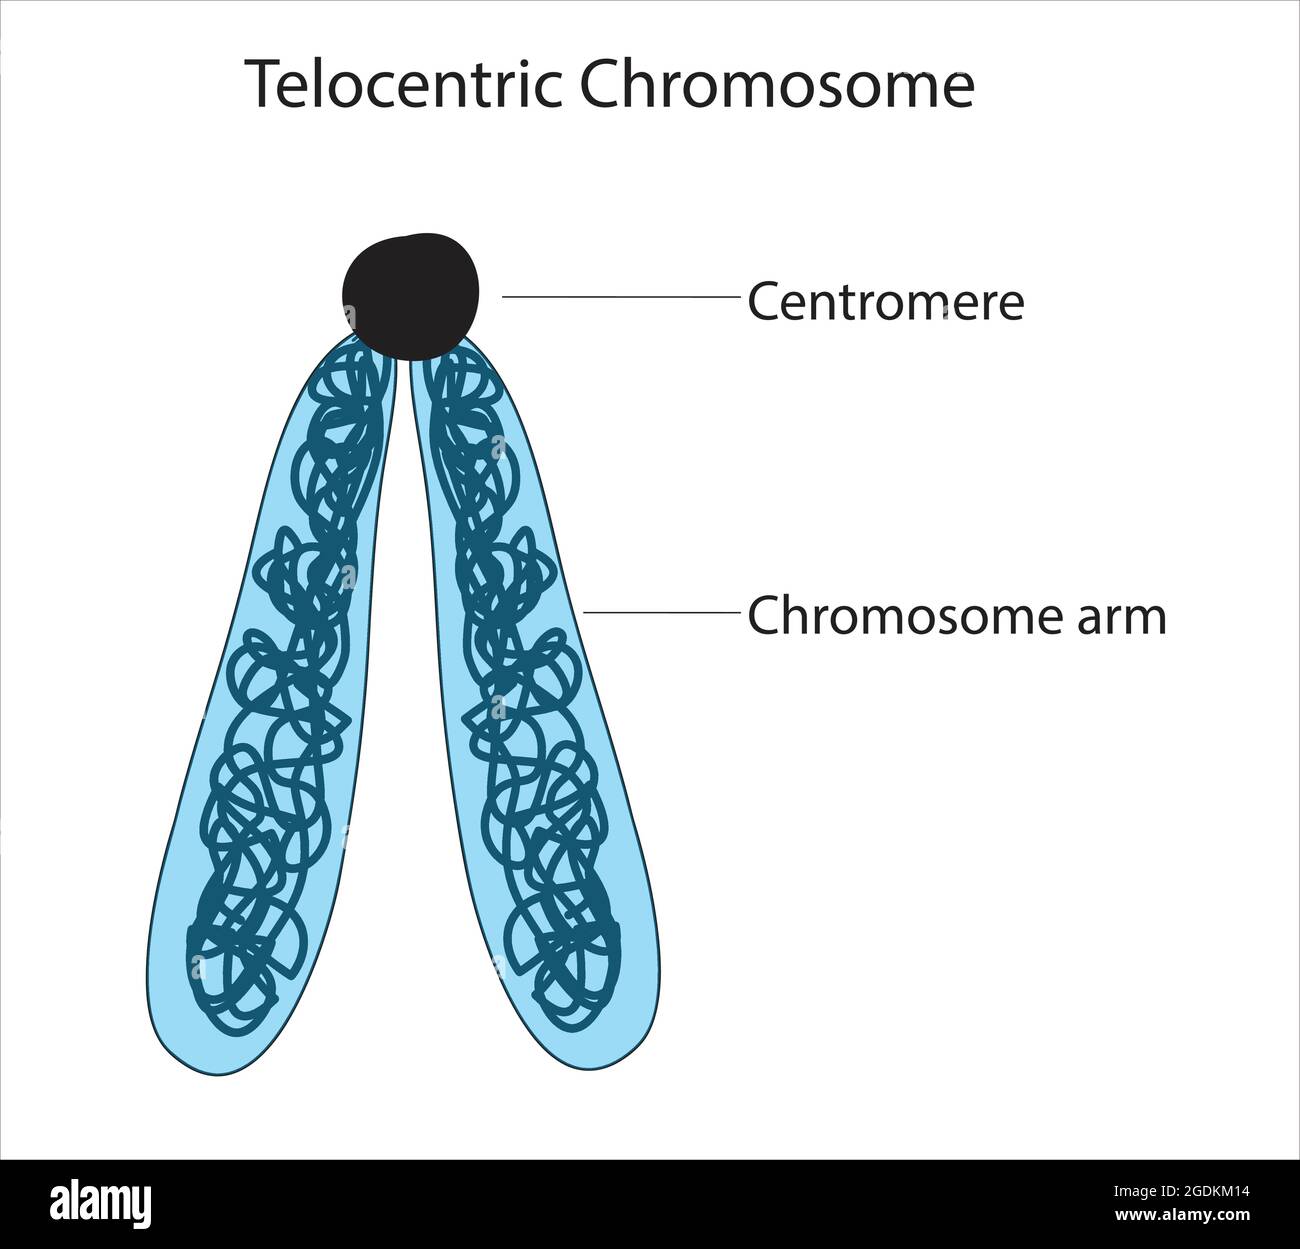 chromosomes télocentriques, classification des chromosomes à armes courtes,  centromère, bras chromosomique, bras chromosomique, adn, bras p, bras q,  bras p, bras q Image Vectorielle Stock - Alamy